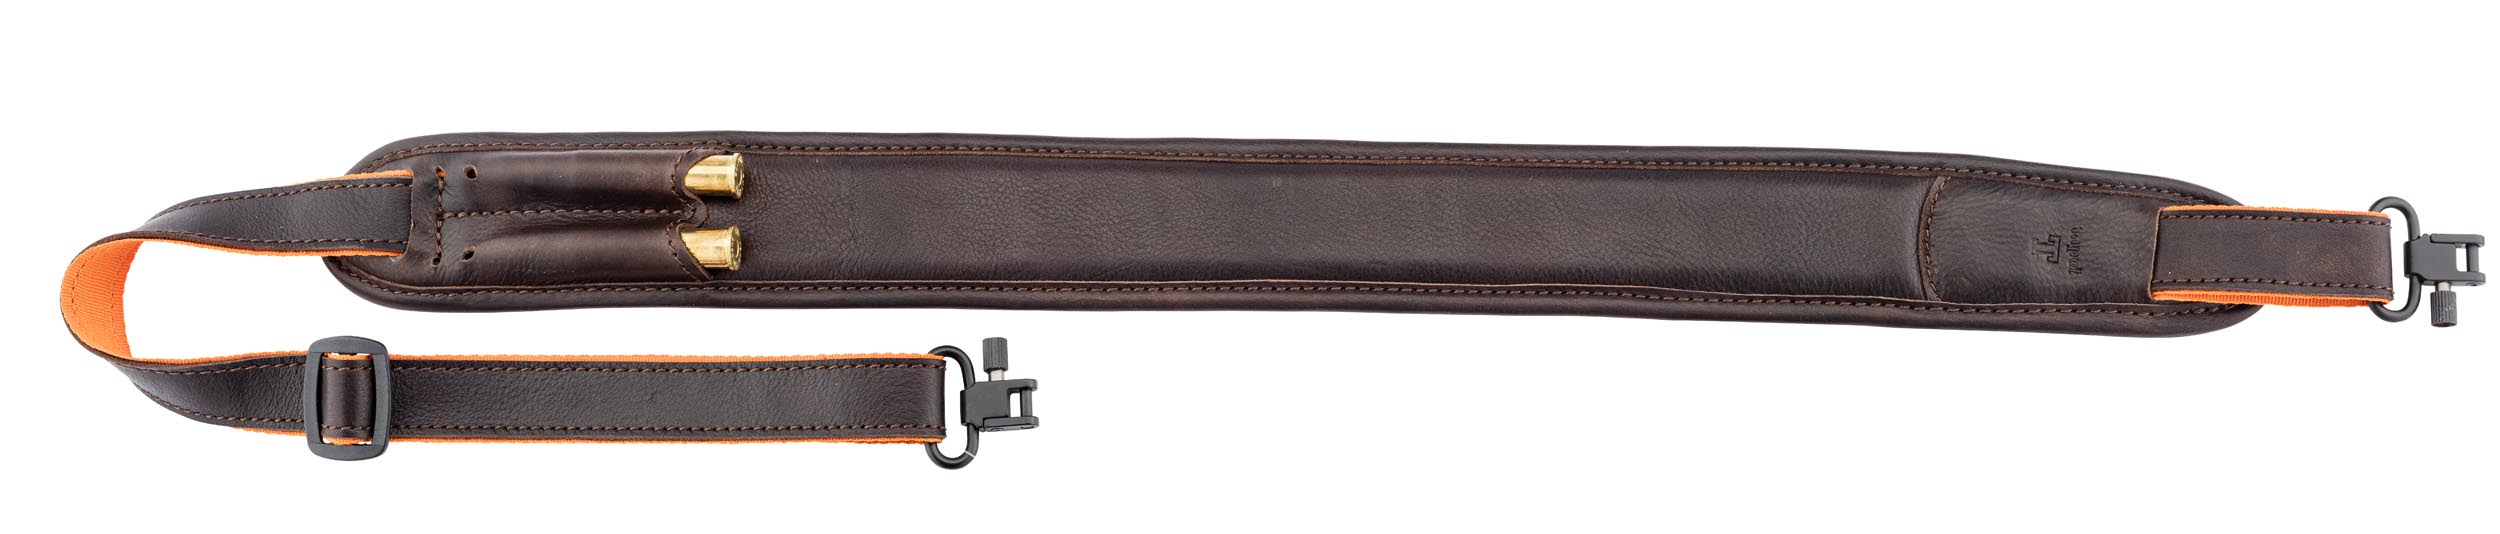 Blaser Bretelle carabine en cuir avec cartouchière - Accessoires